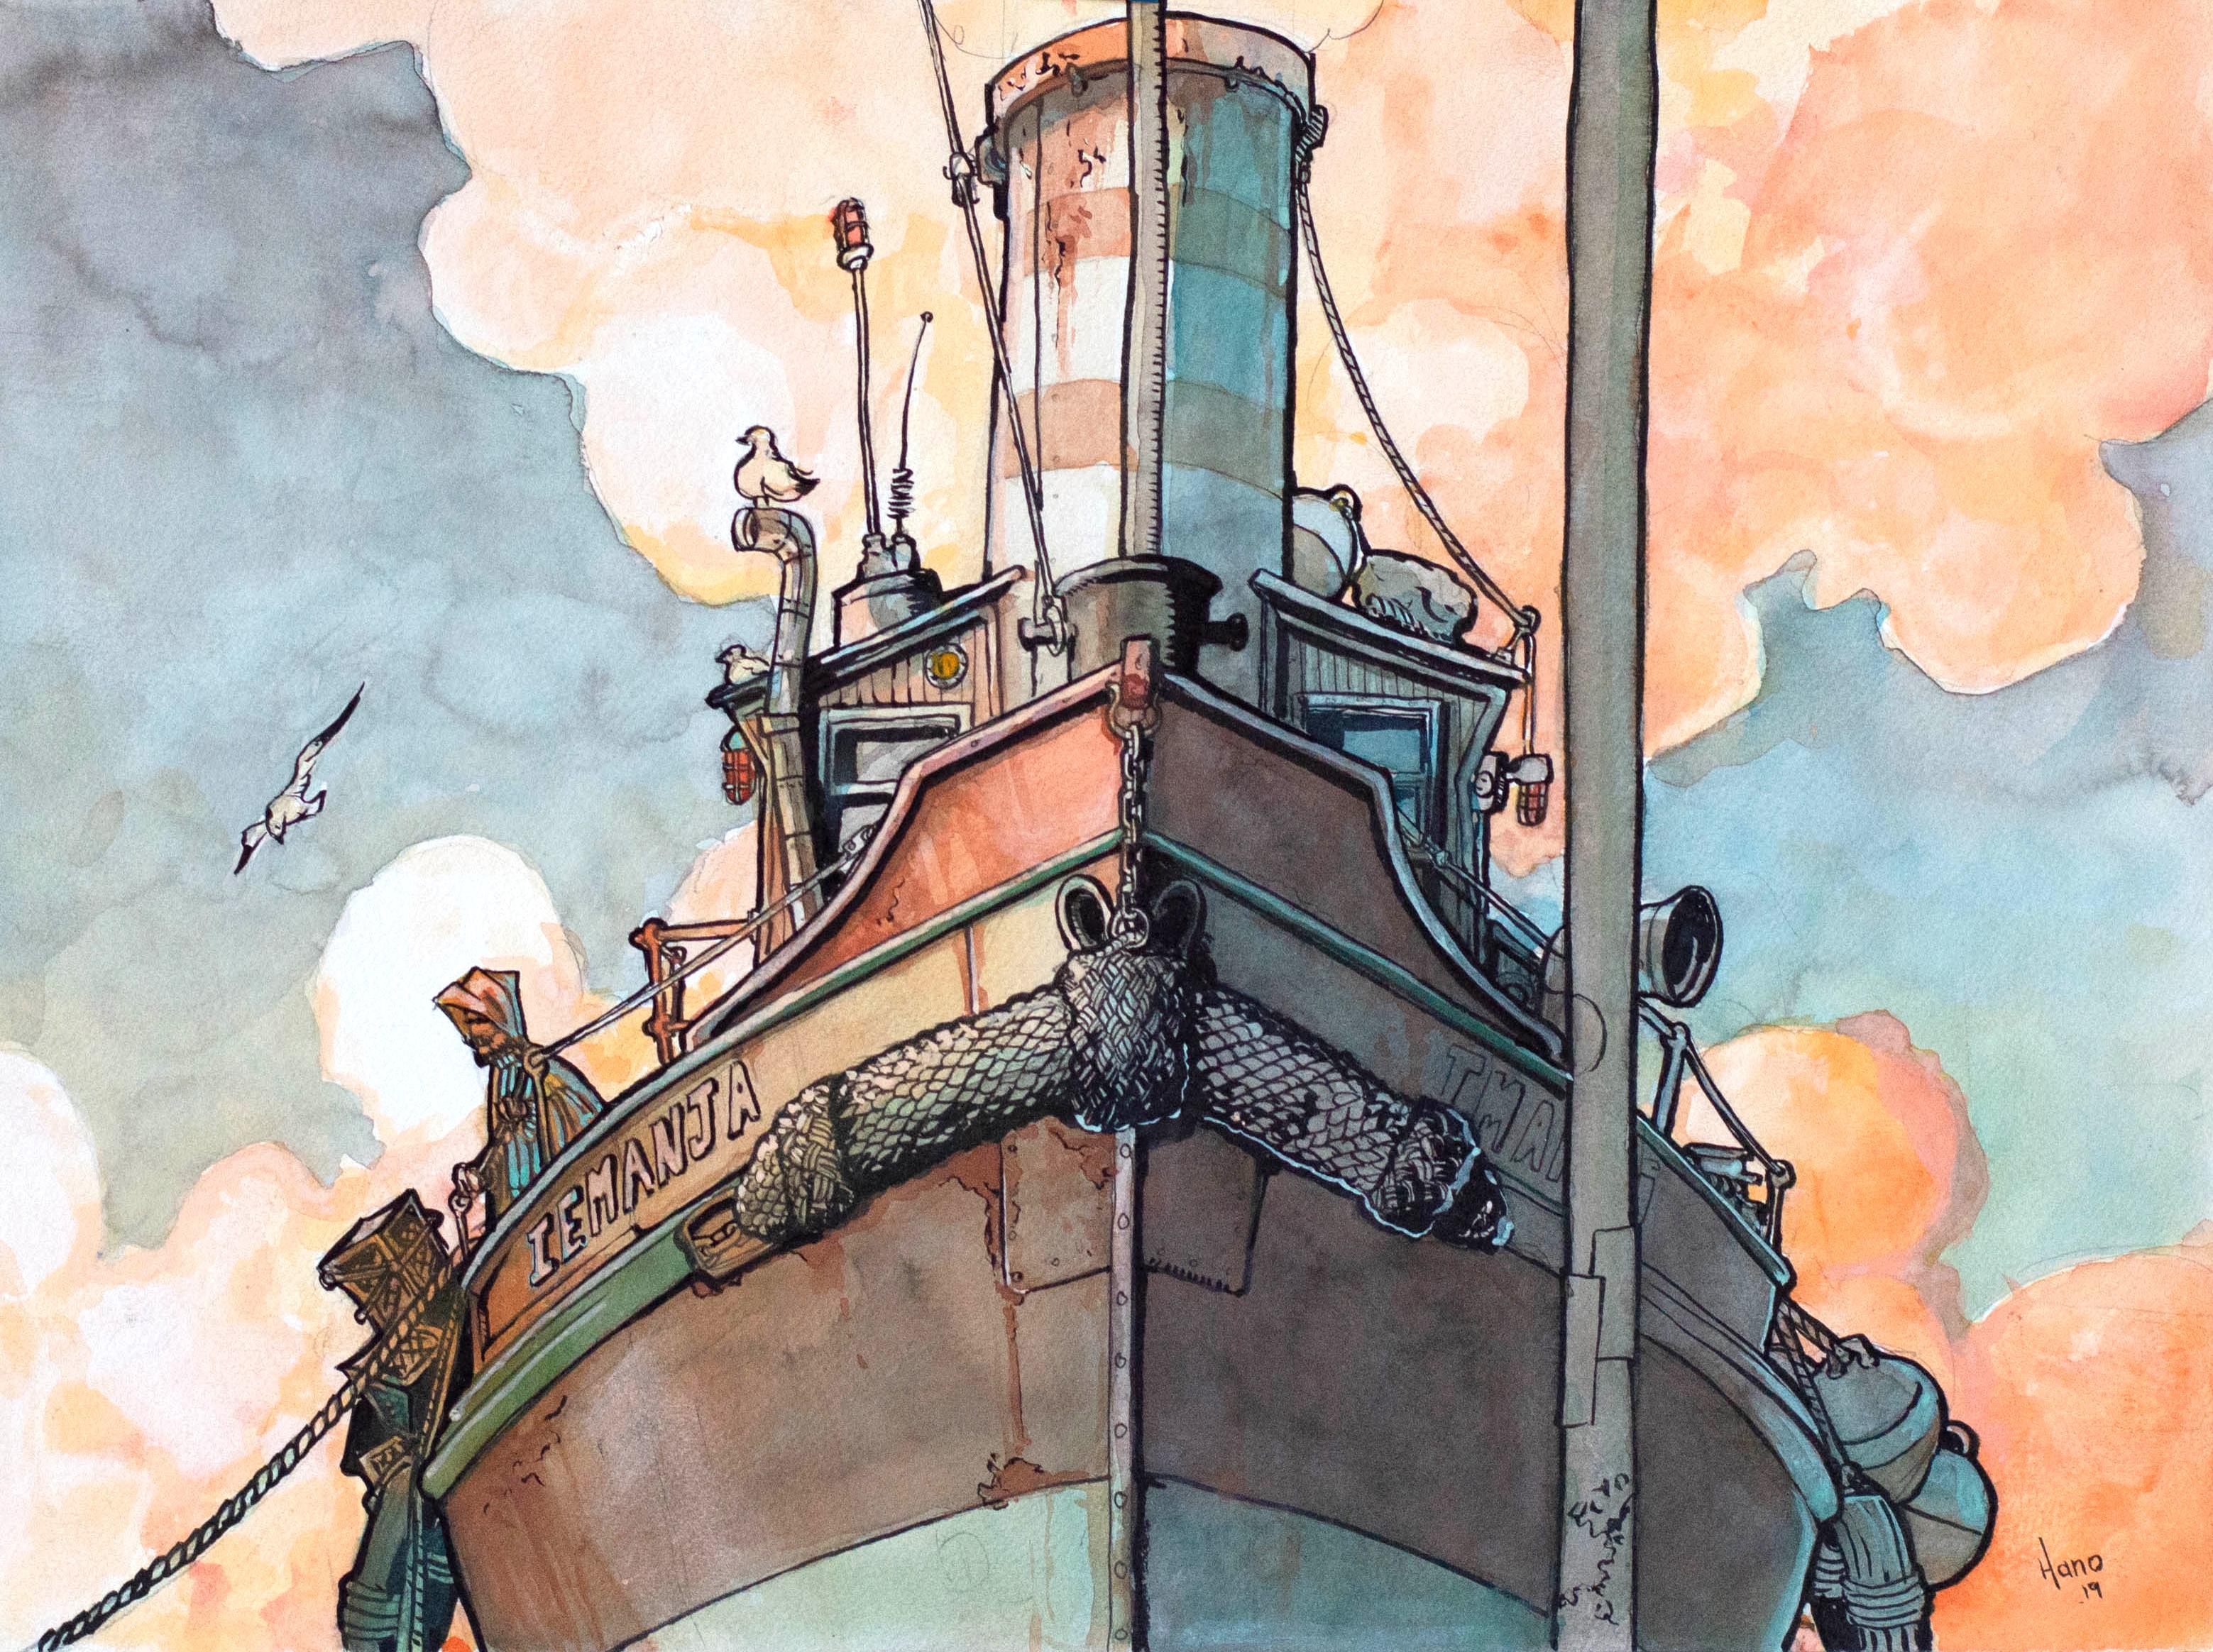 Harbor Boat, Rotterdam, Original Painting - Mixed Media Art by Hano Dercksen